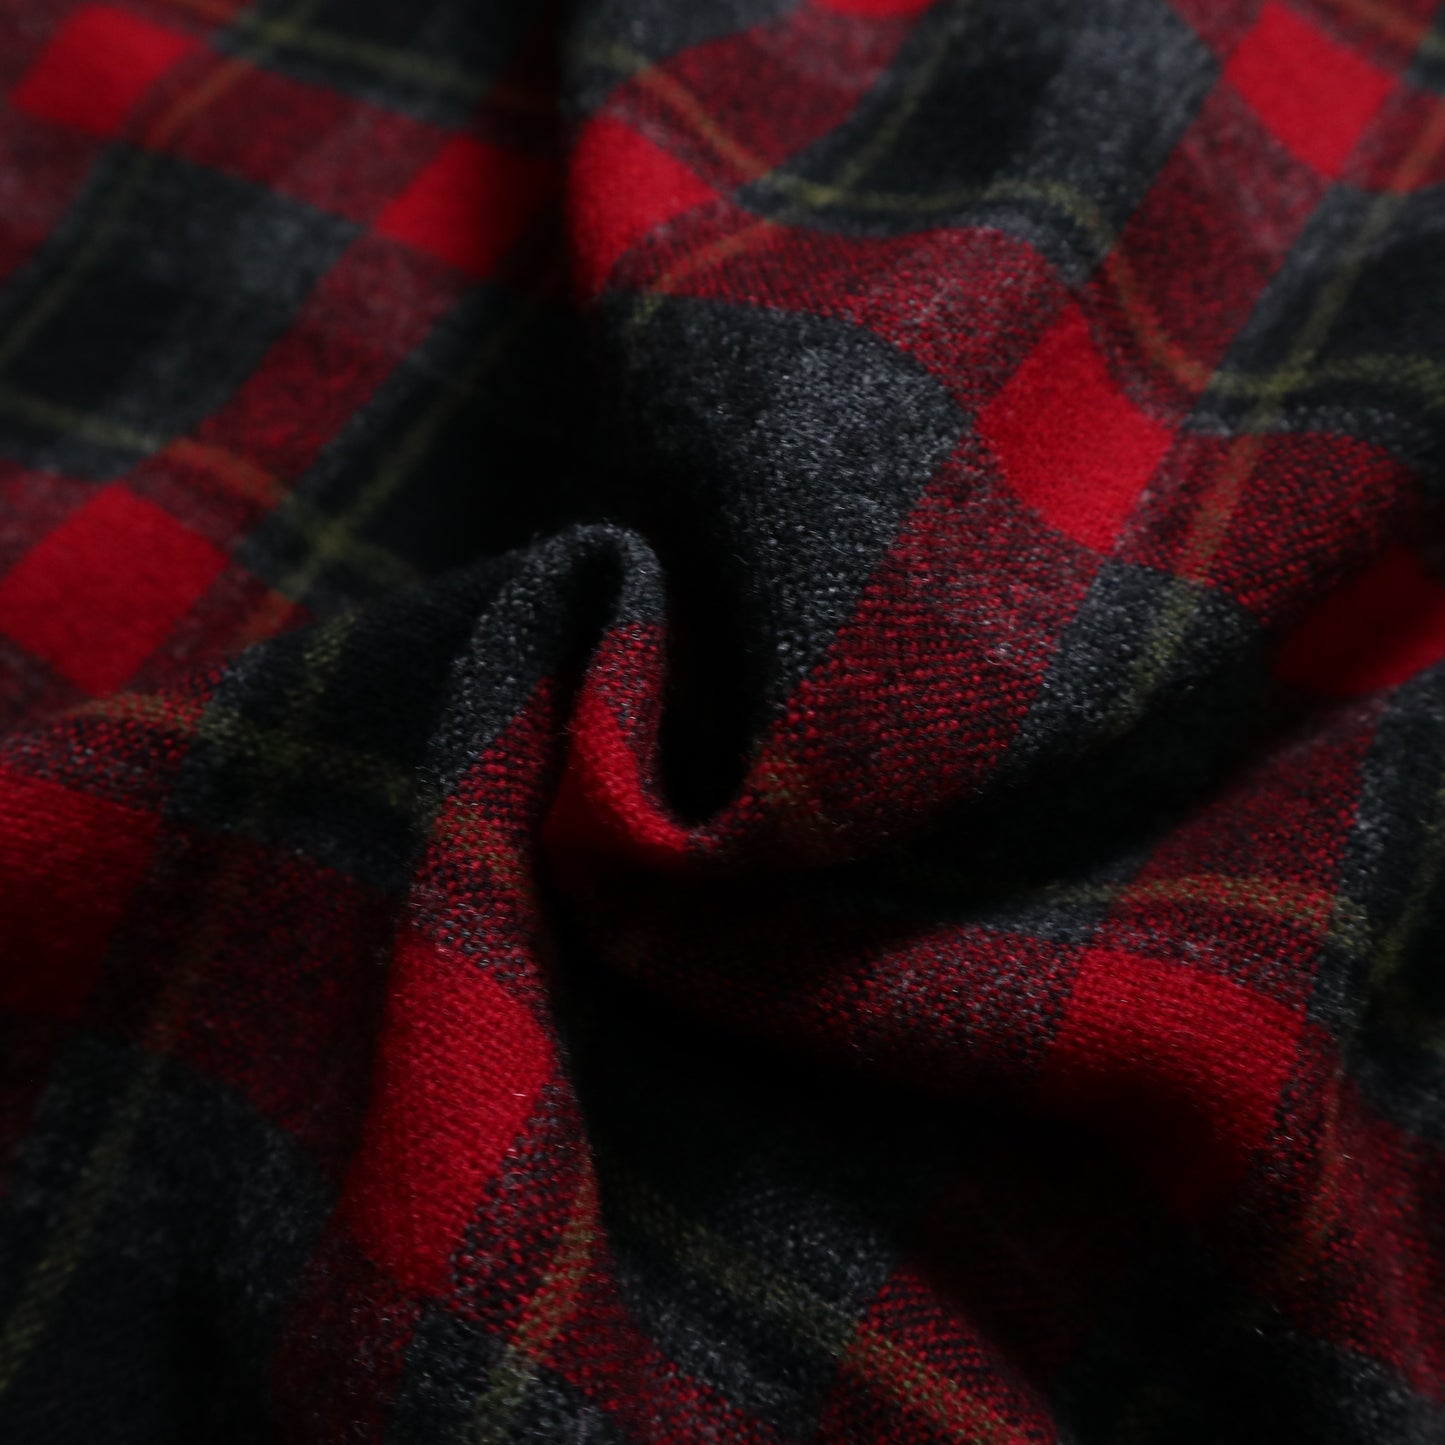 1950s 美國製 Pendleton 羊毛格紋外套 Wool plaid jacket